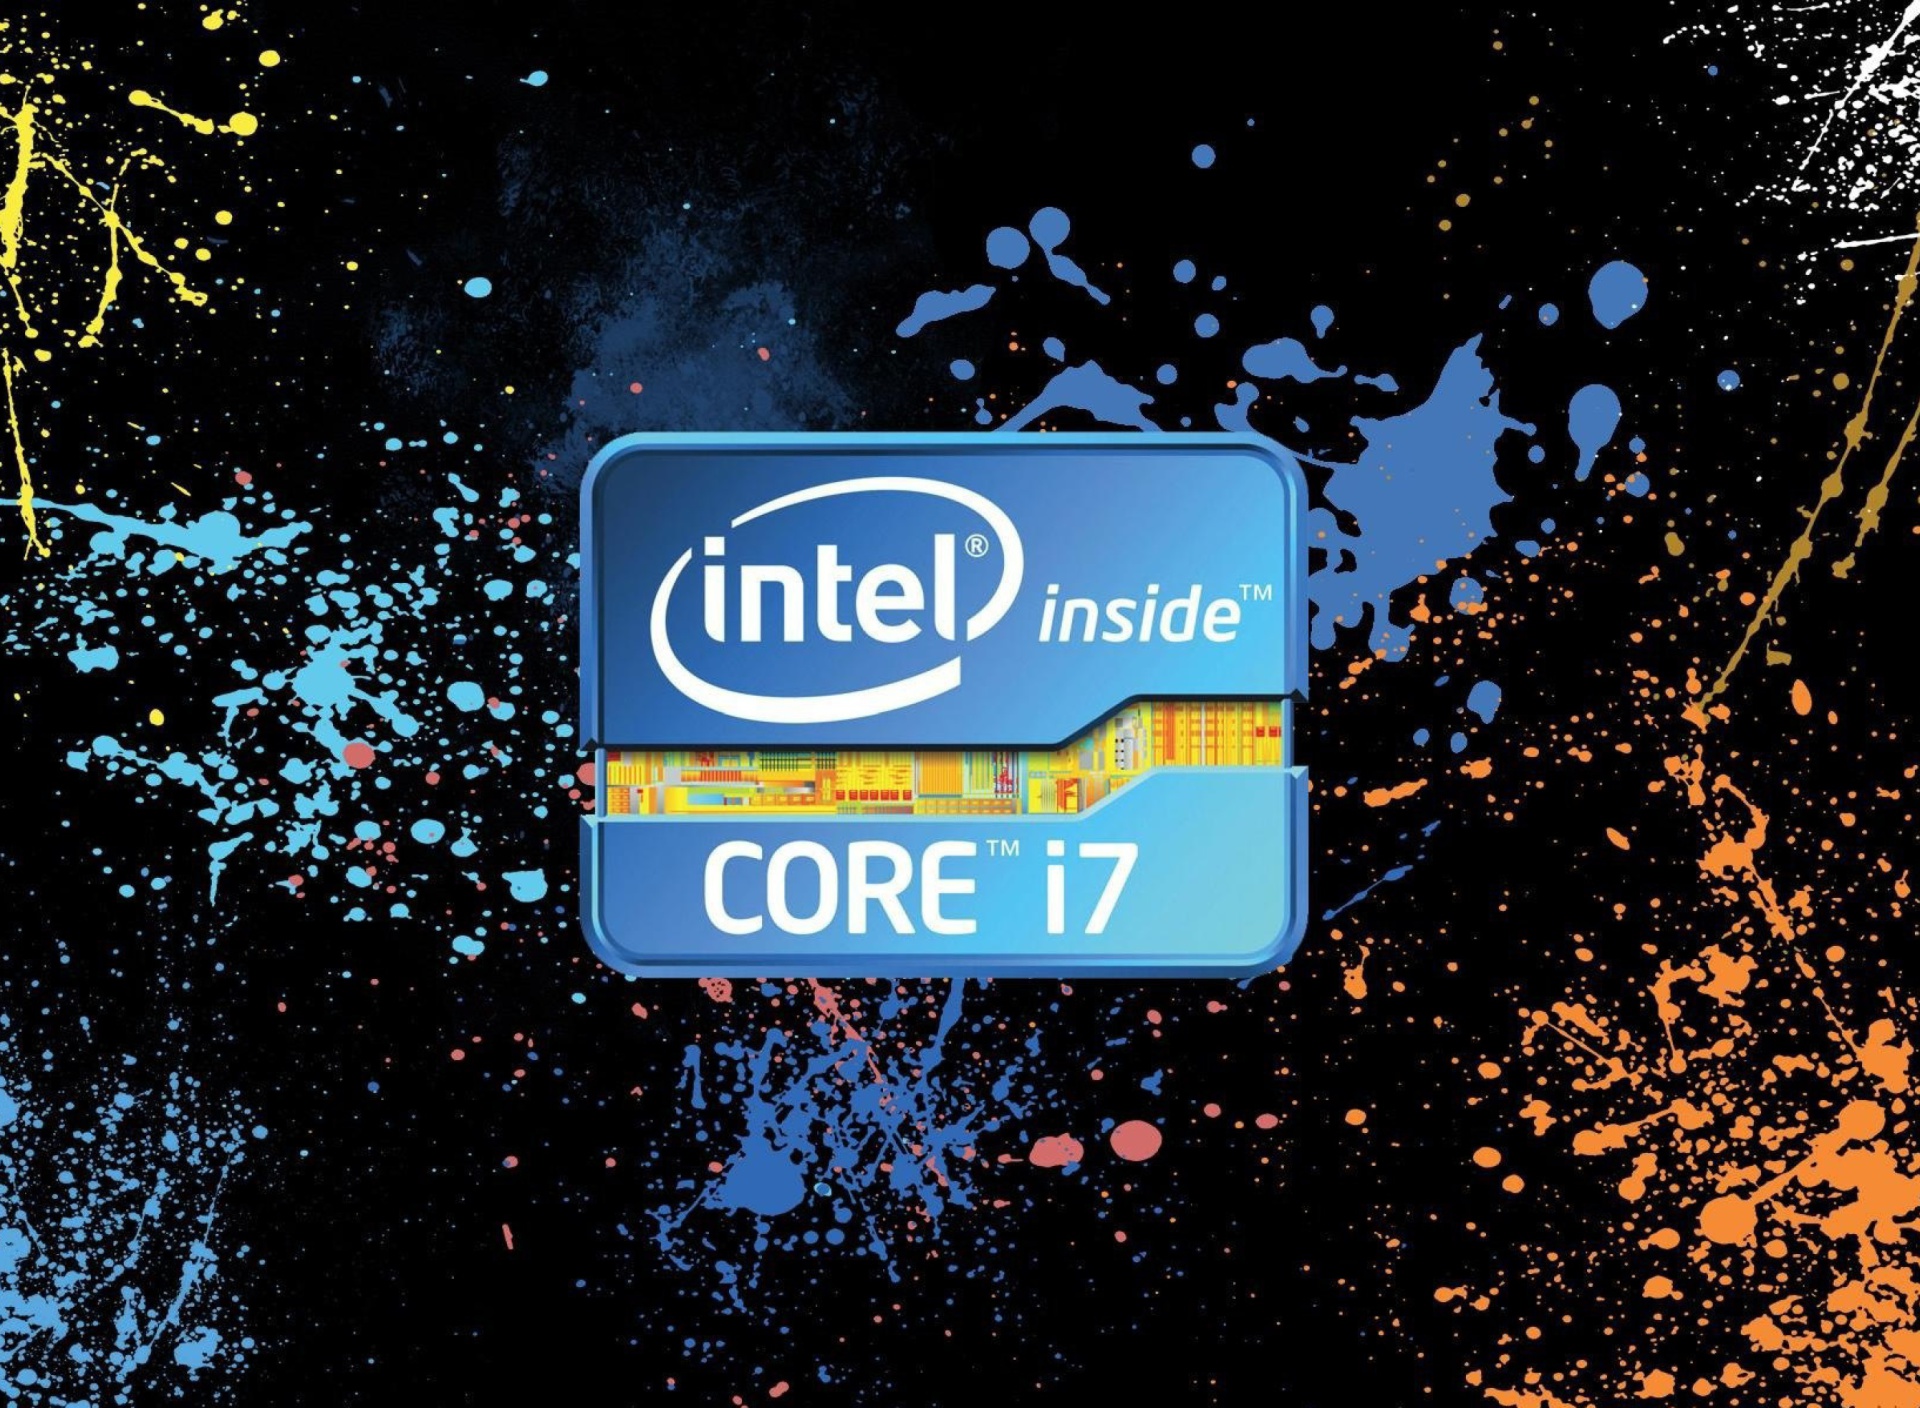 Intel Core i7 wallpaper 1920x1408